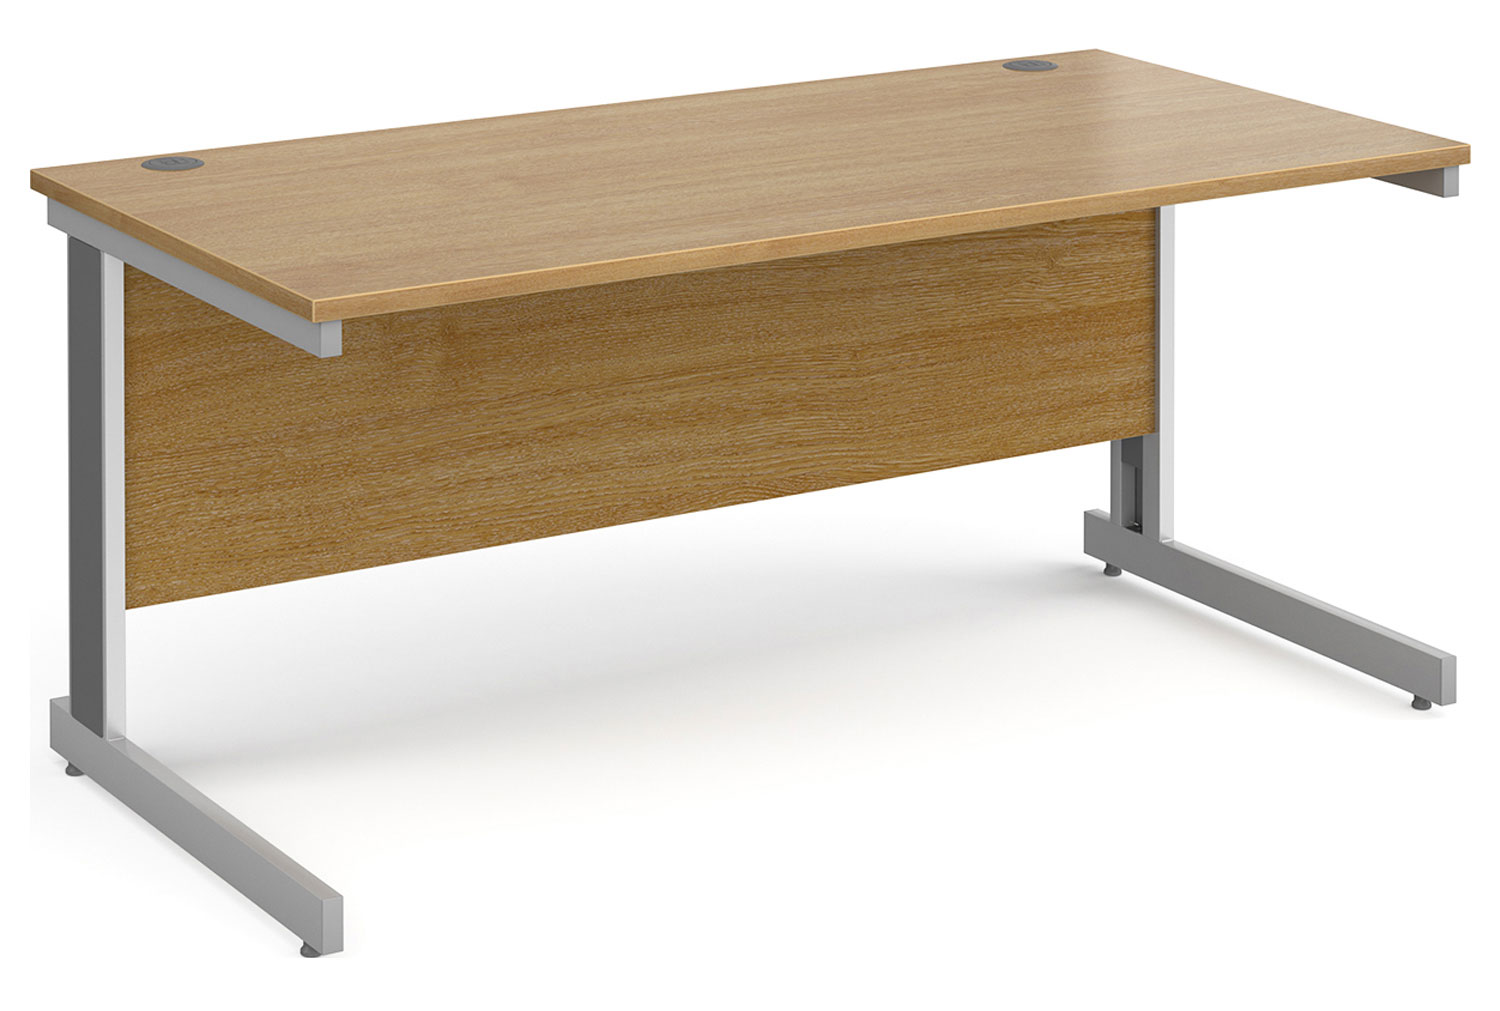 Tully Deluxe Rectangular Office Desk, 160wx80dx73h (cm), Oak, Fully Installed